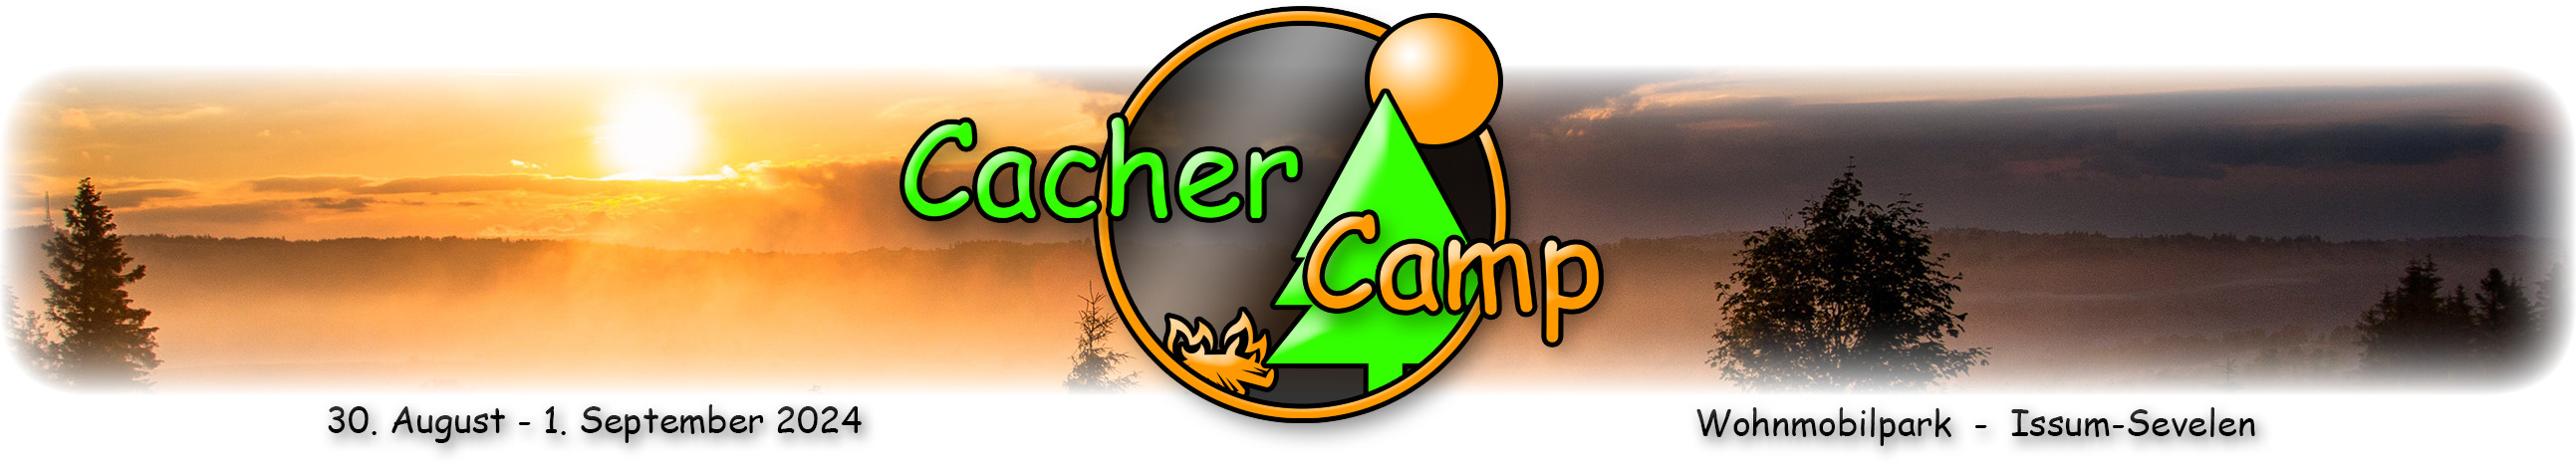 Cacher-Camp Banner